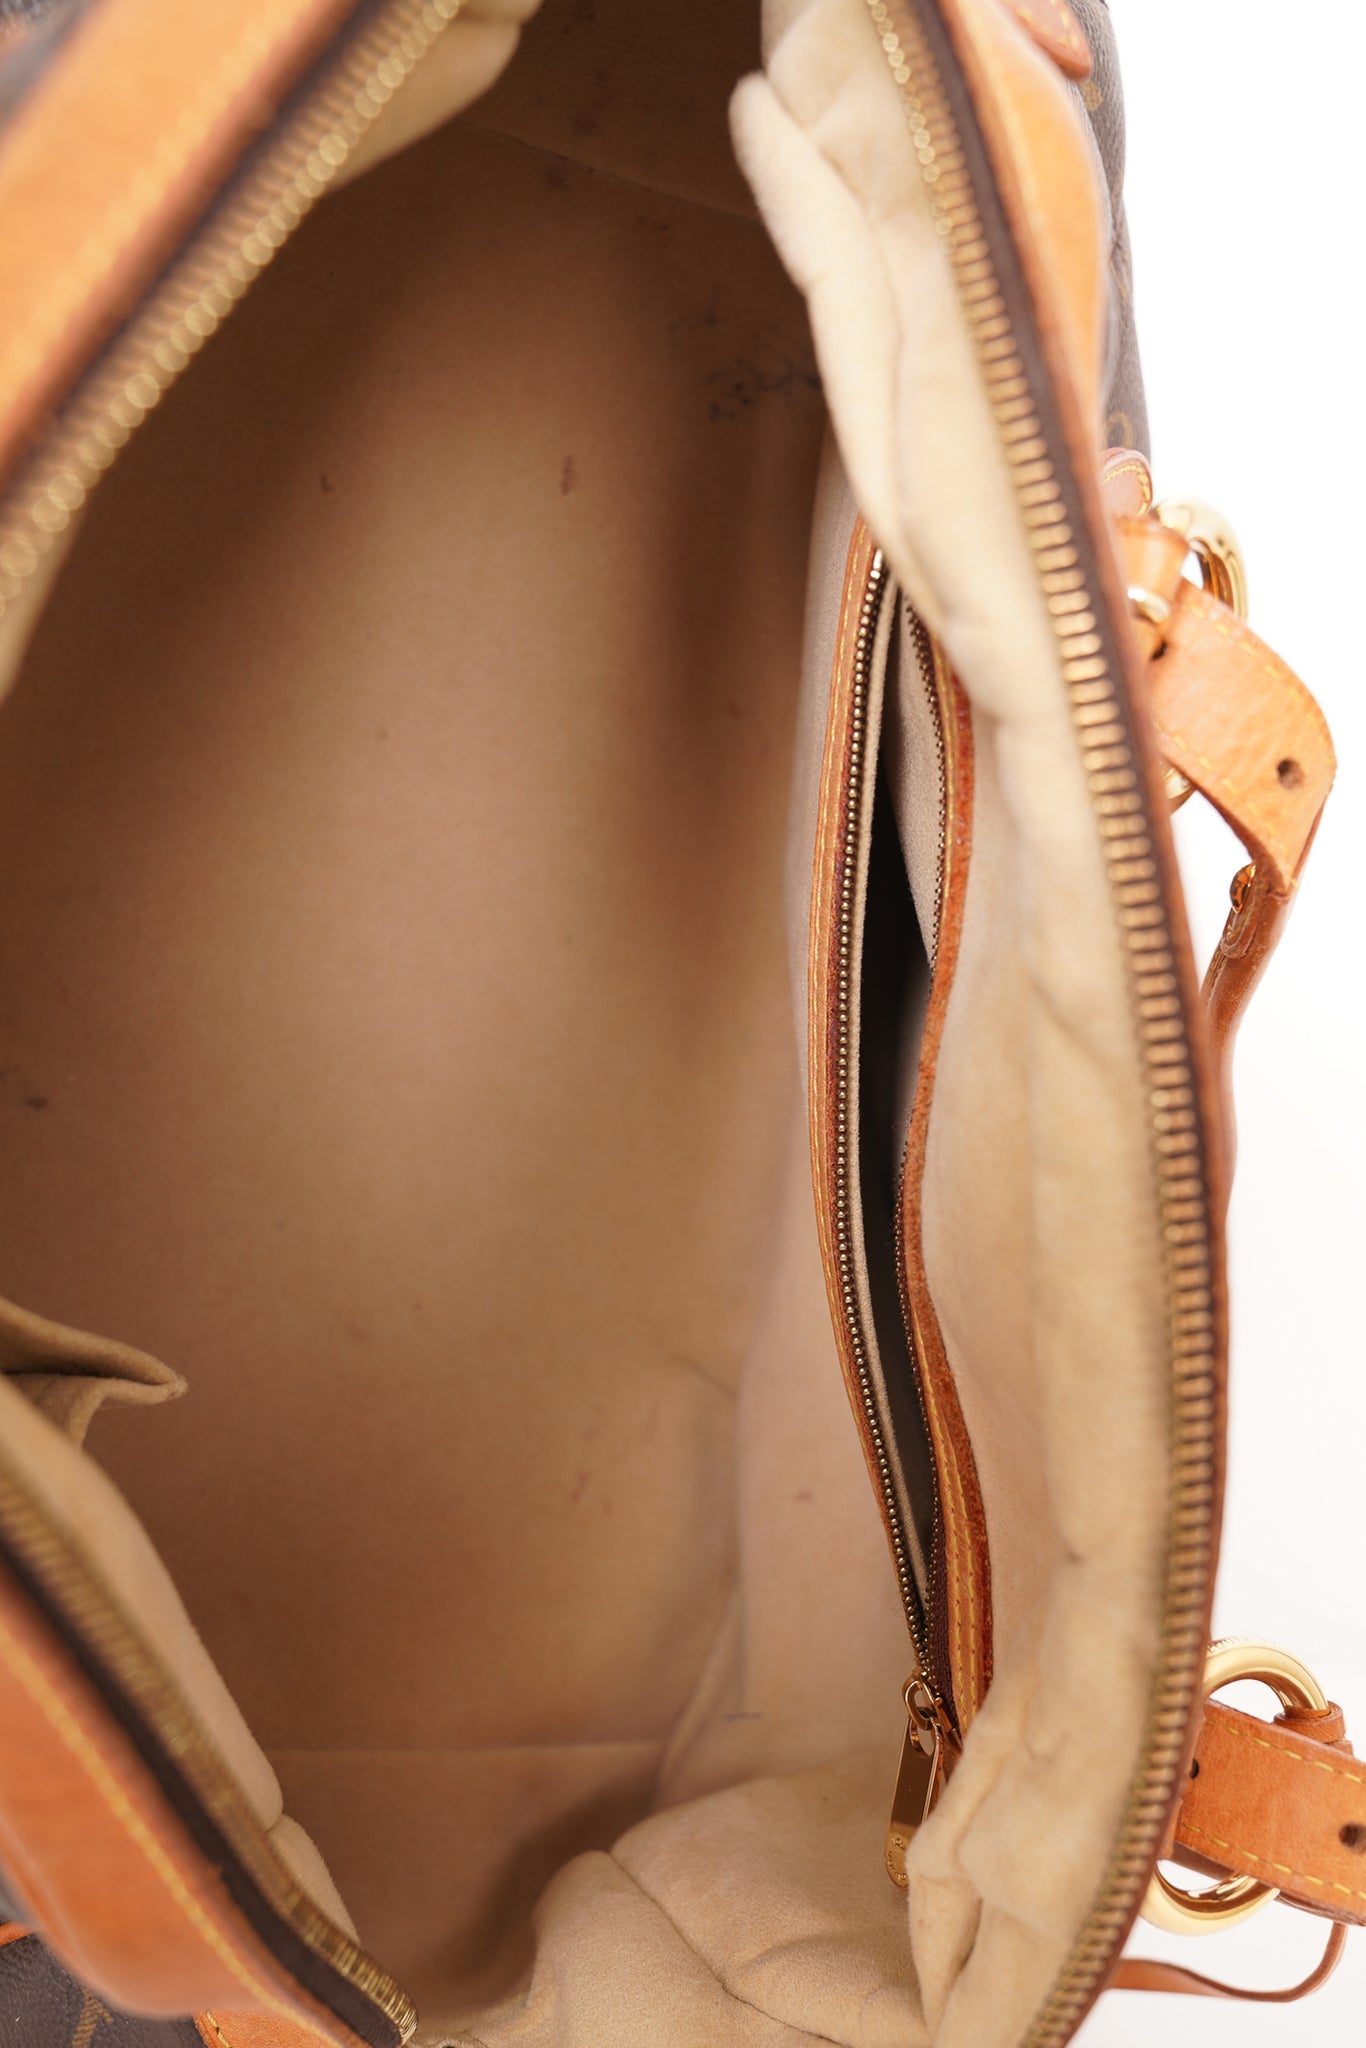 How to Spot a Real vs Fake Goyard Artois Bag? – LegitGrails